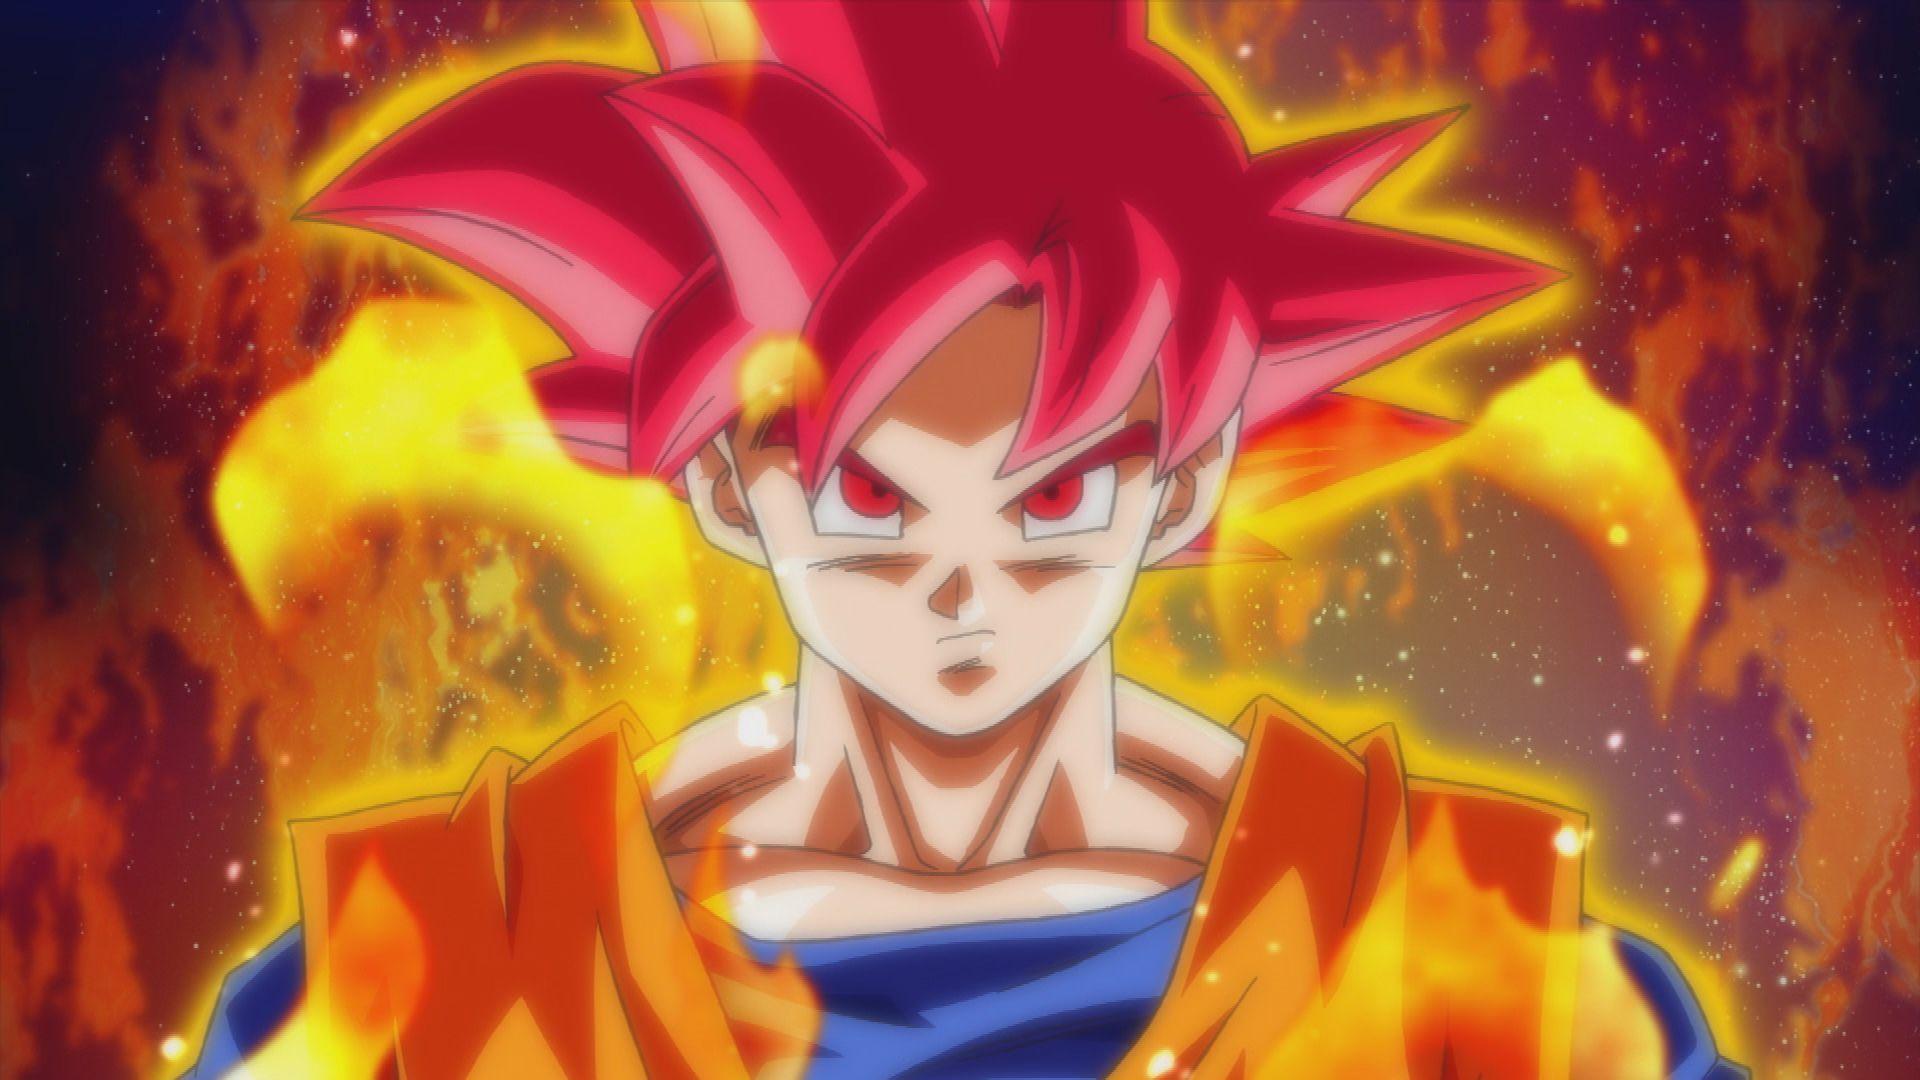 Dragon Ball Z Goku Super Saiyan God Wallpaper. Anime